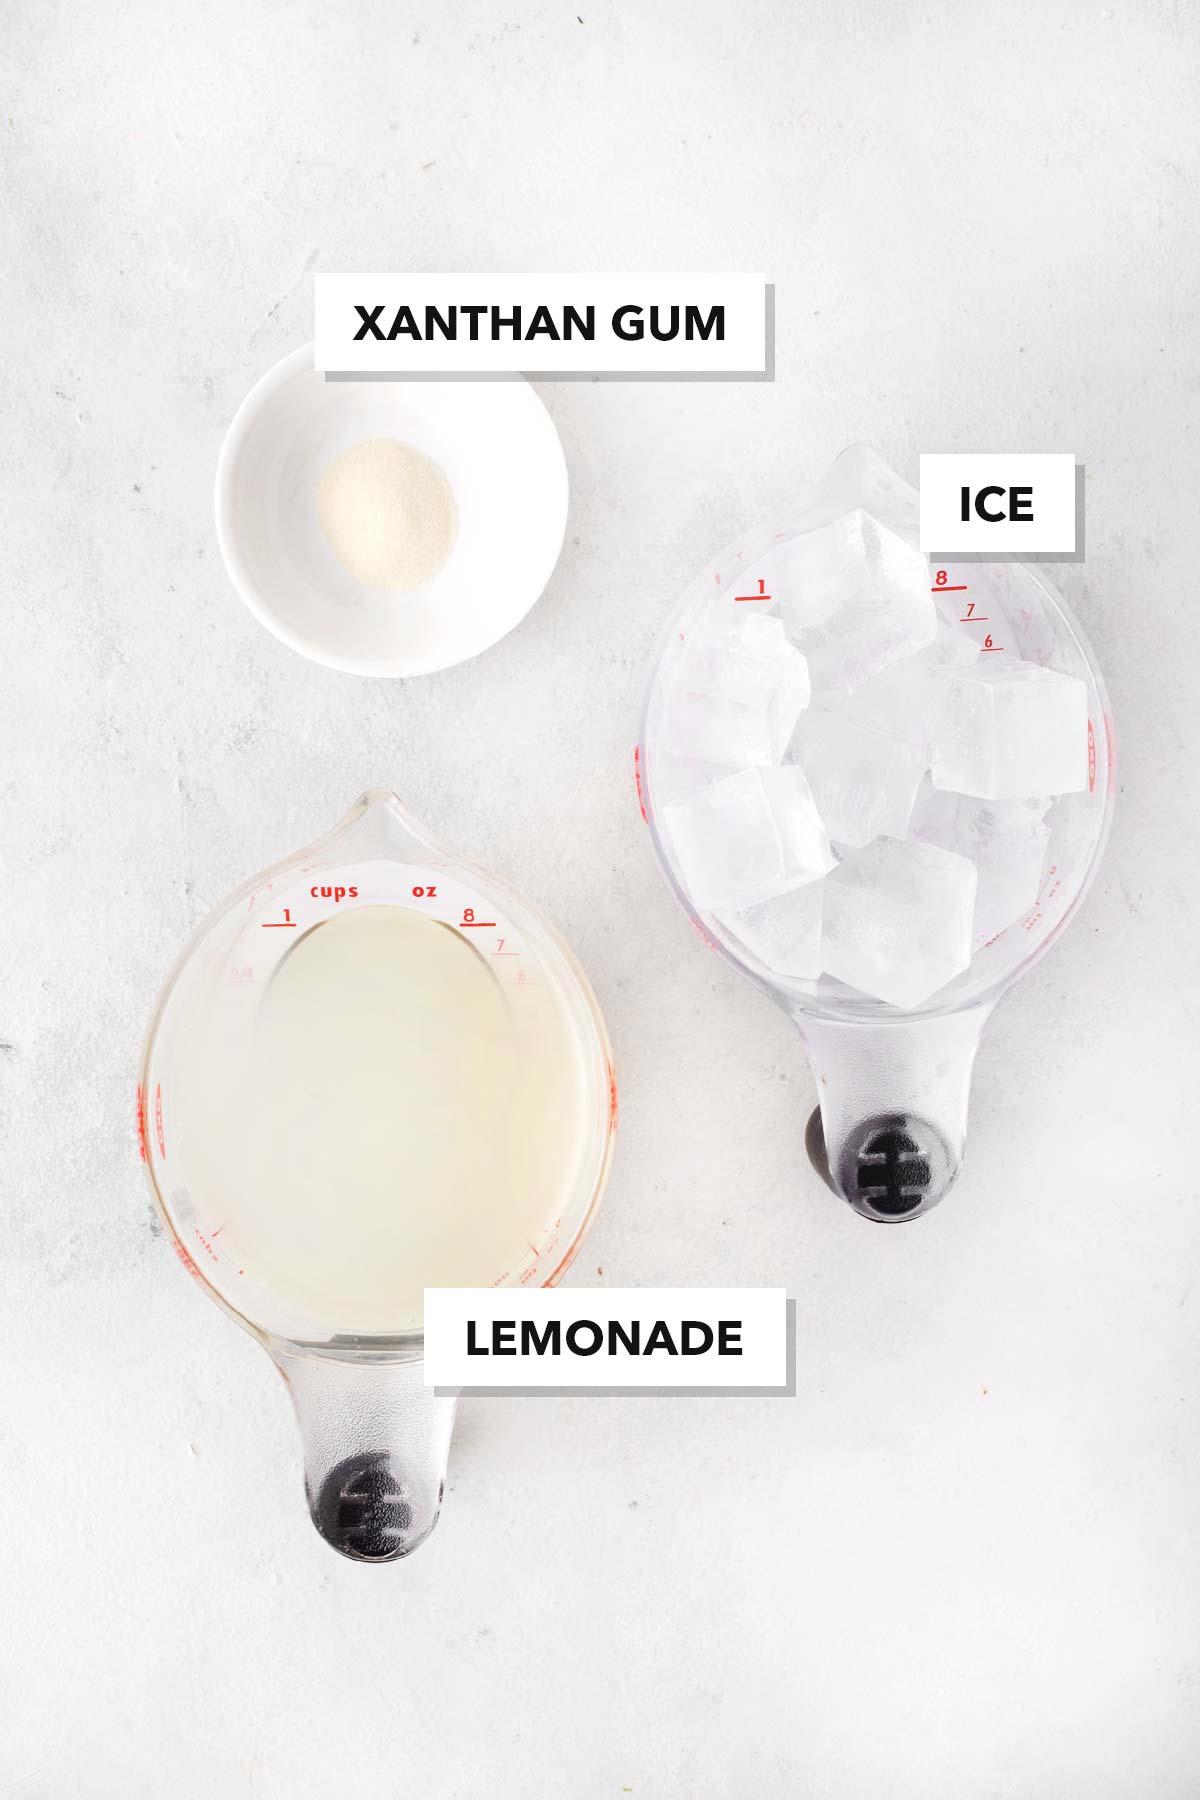 Ingredients for frozen lemonade.